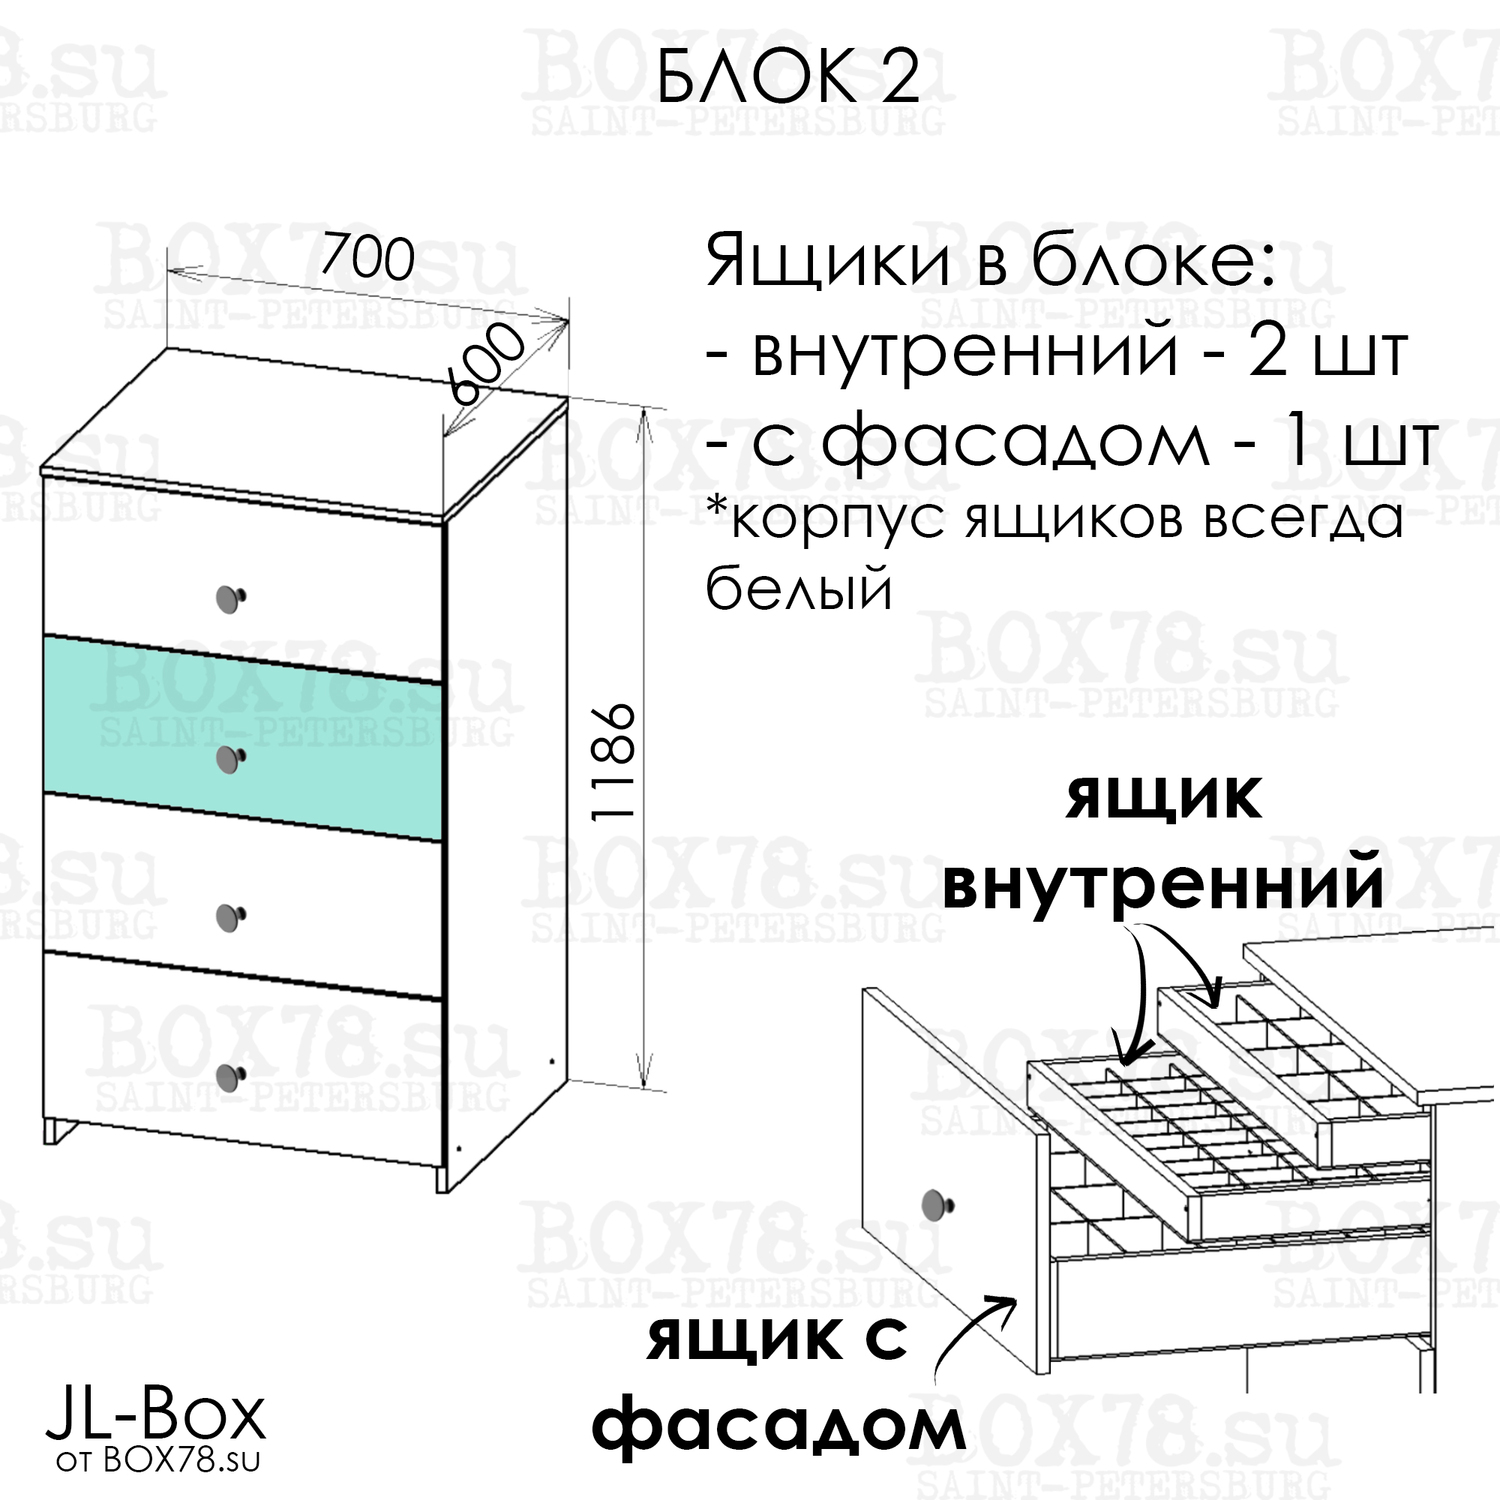 JL-Box. Блок 2